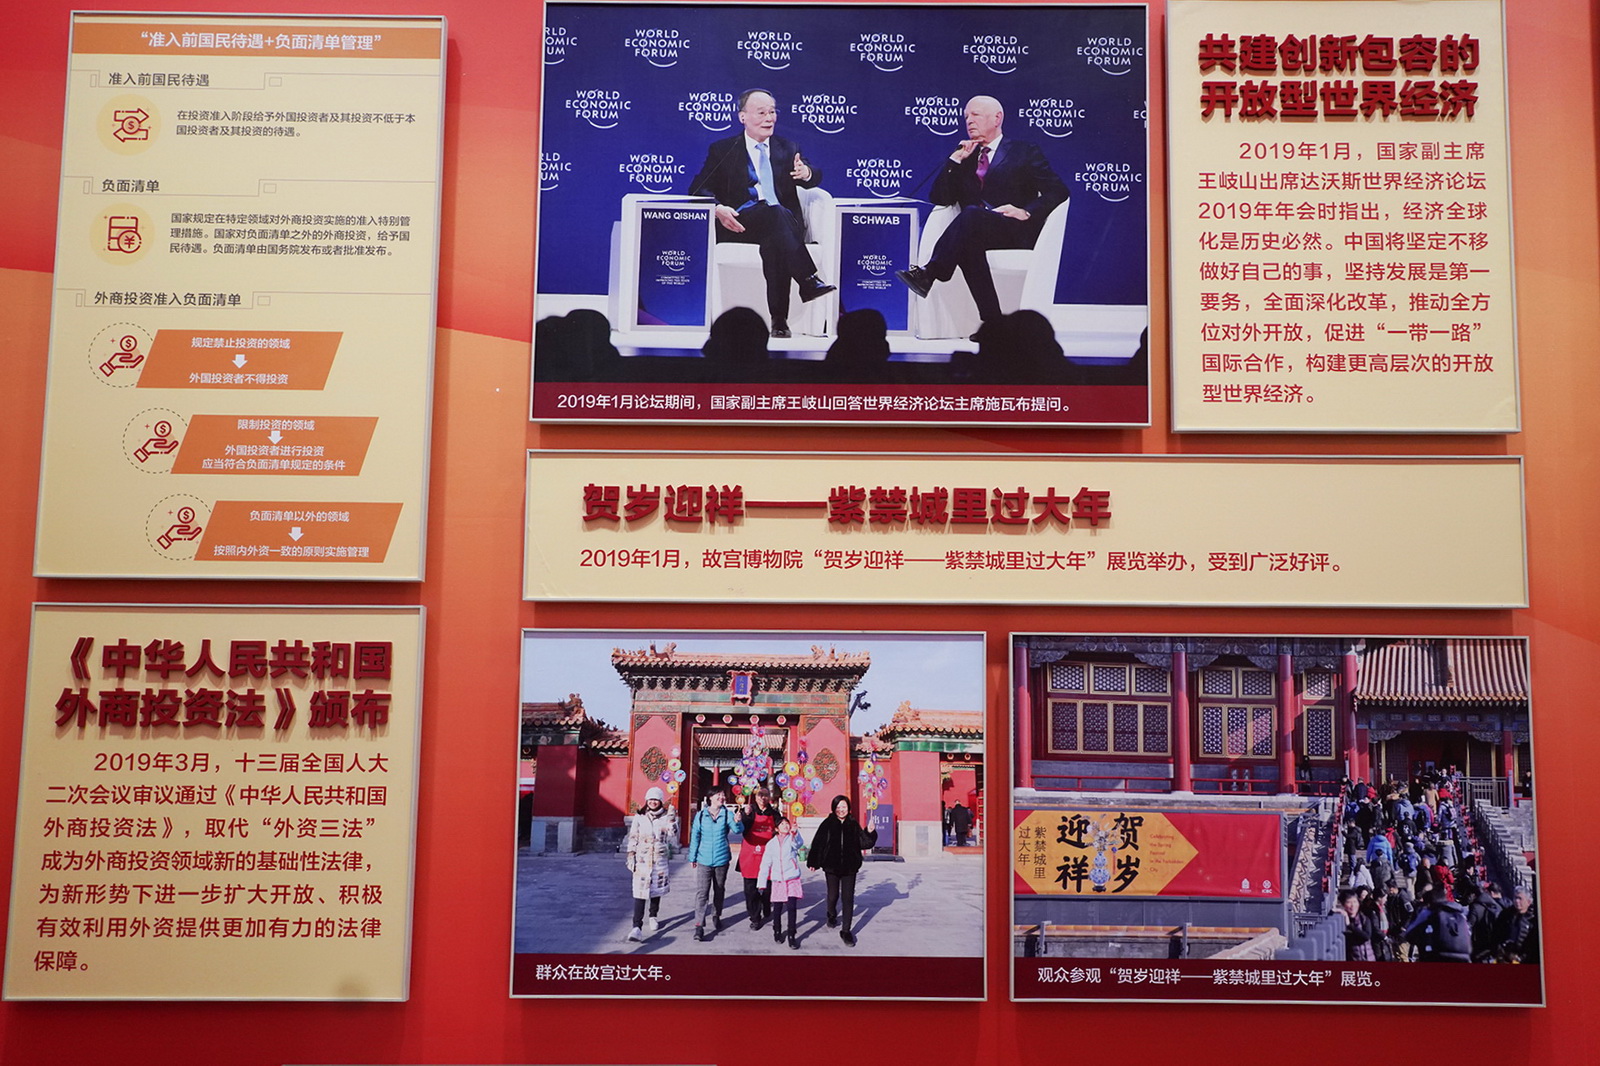 《中華人民共和國外商投資法》頒布﹔共建創新包容的開放型世界經濟﹔賀歲迎祥--紫禁城裡過大年。